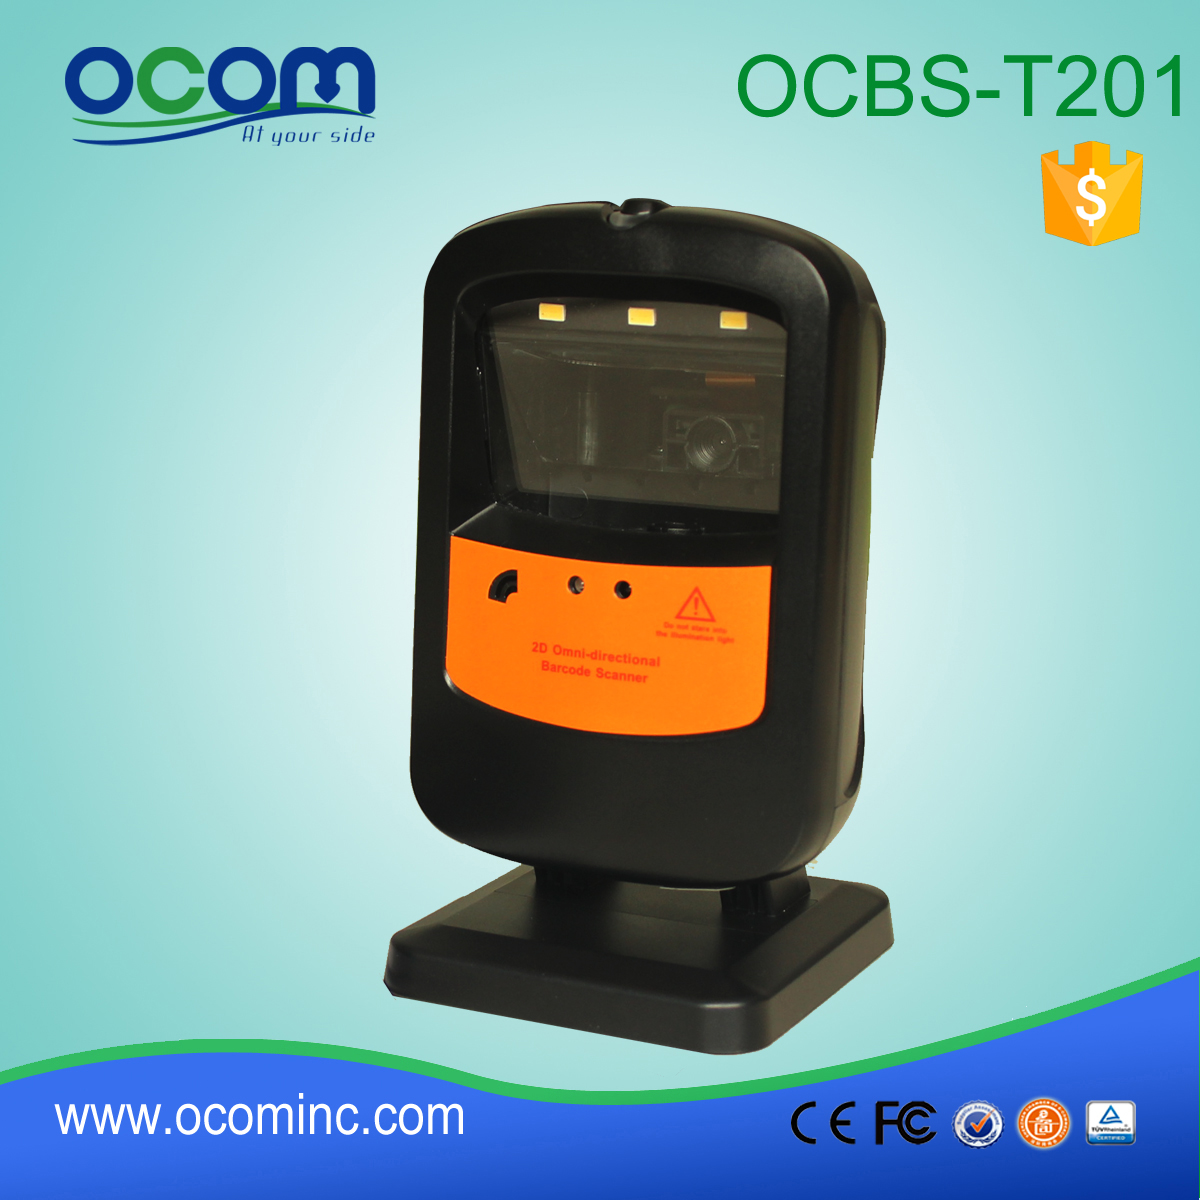 OCB-T201: omnidirezionale di codici a barre RS232 dello scanner, scanner di codici a barre di inventario